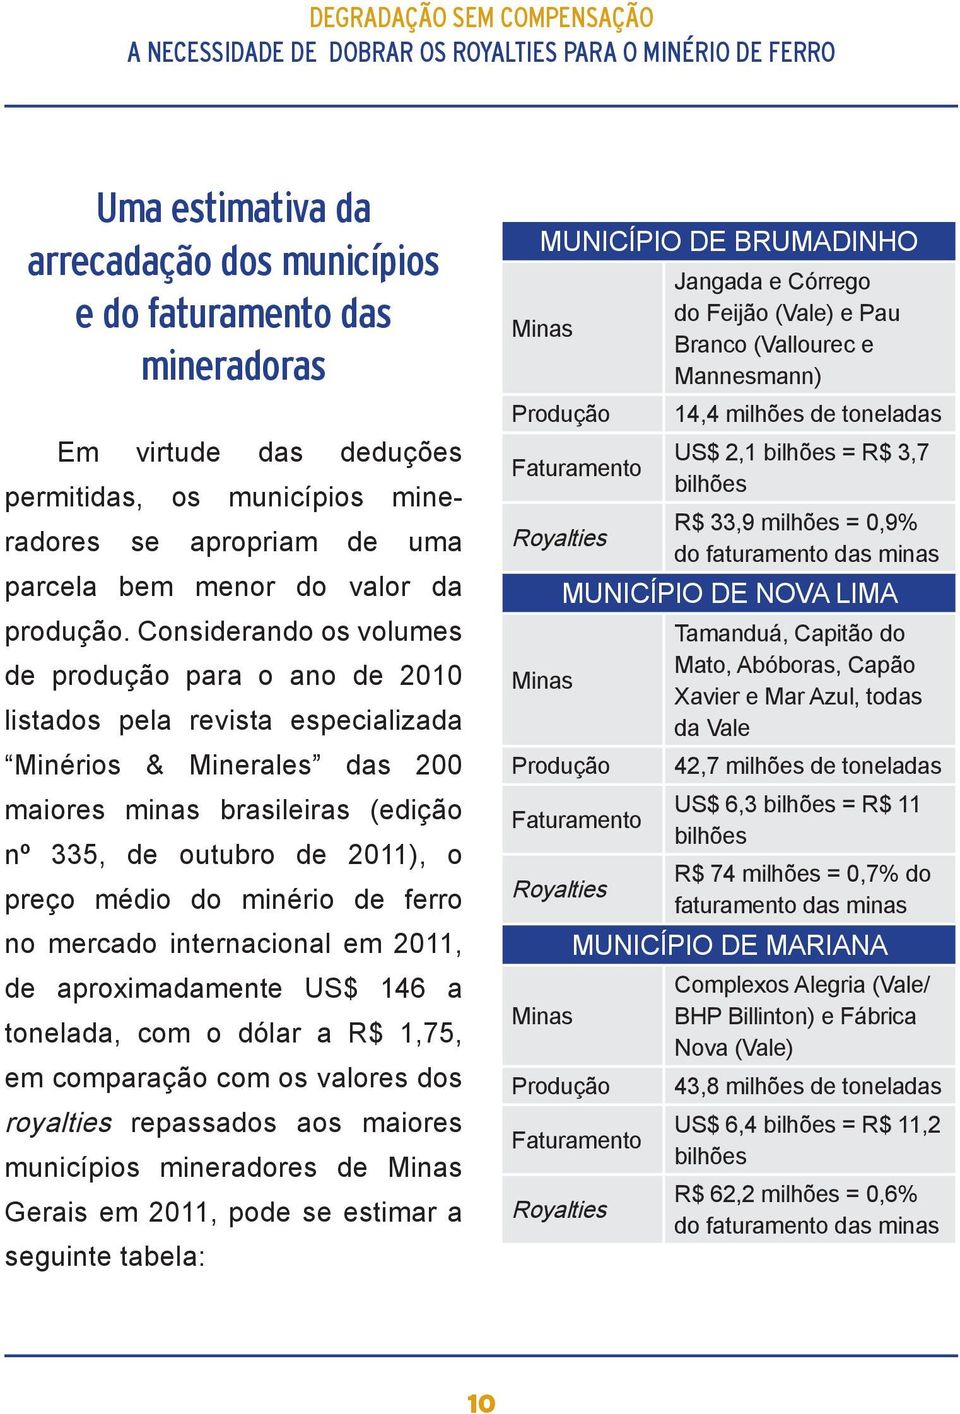 Considerando os volumes de produção para o ano de 2010 listados pela revista especializada Minérios & Minerales das 200 maiores minas brasileiras (edição nº 335, de outubro de 2011), o preço médio do